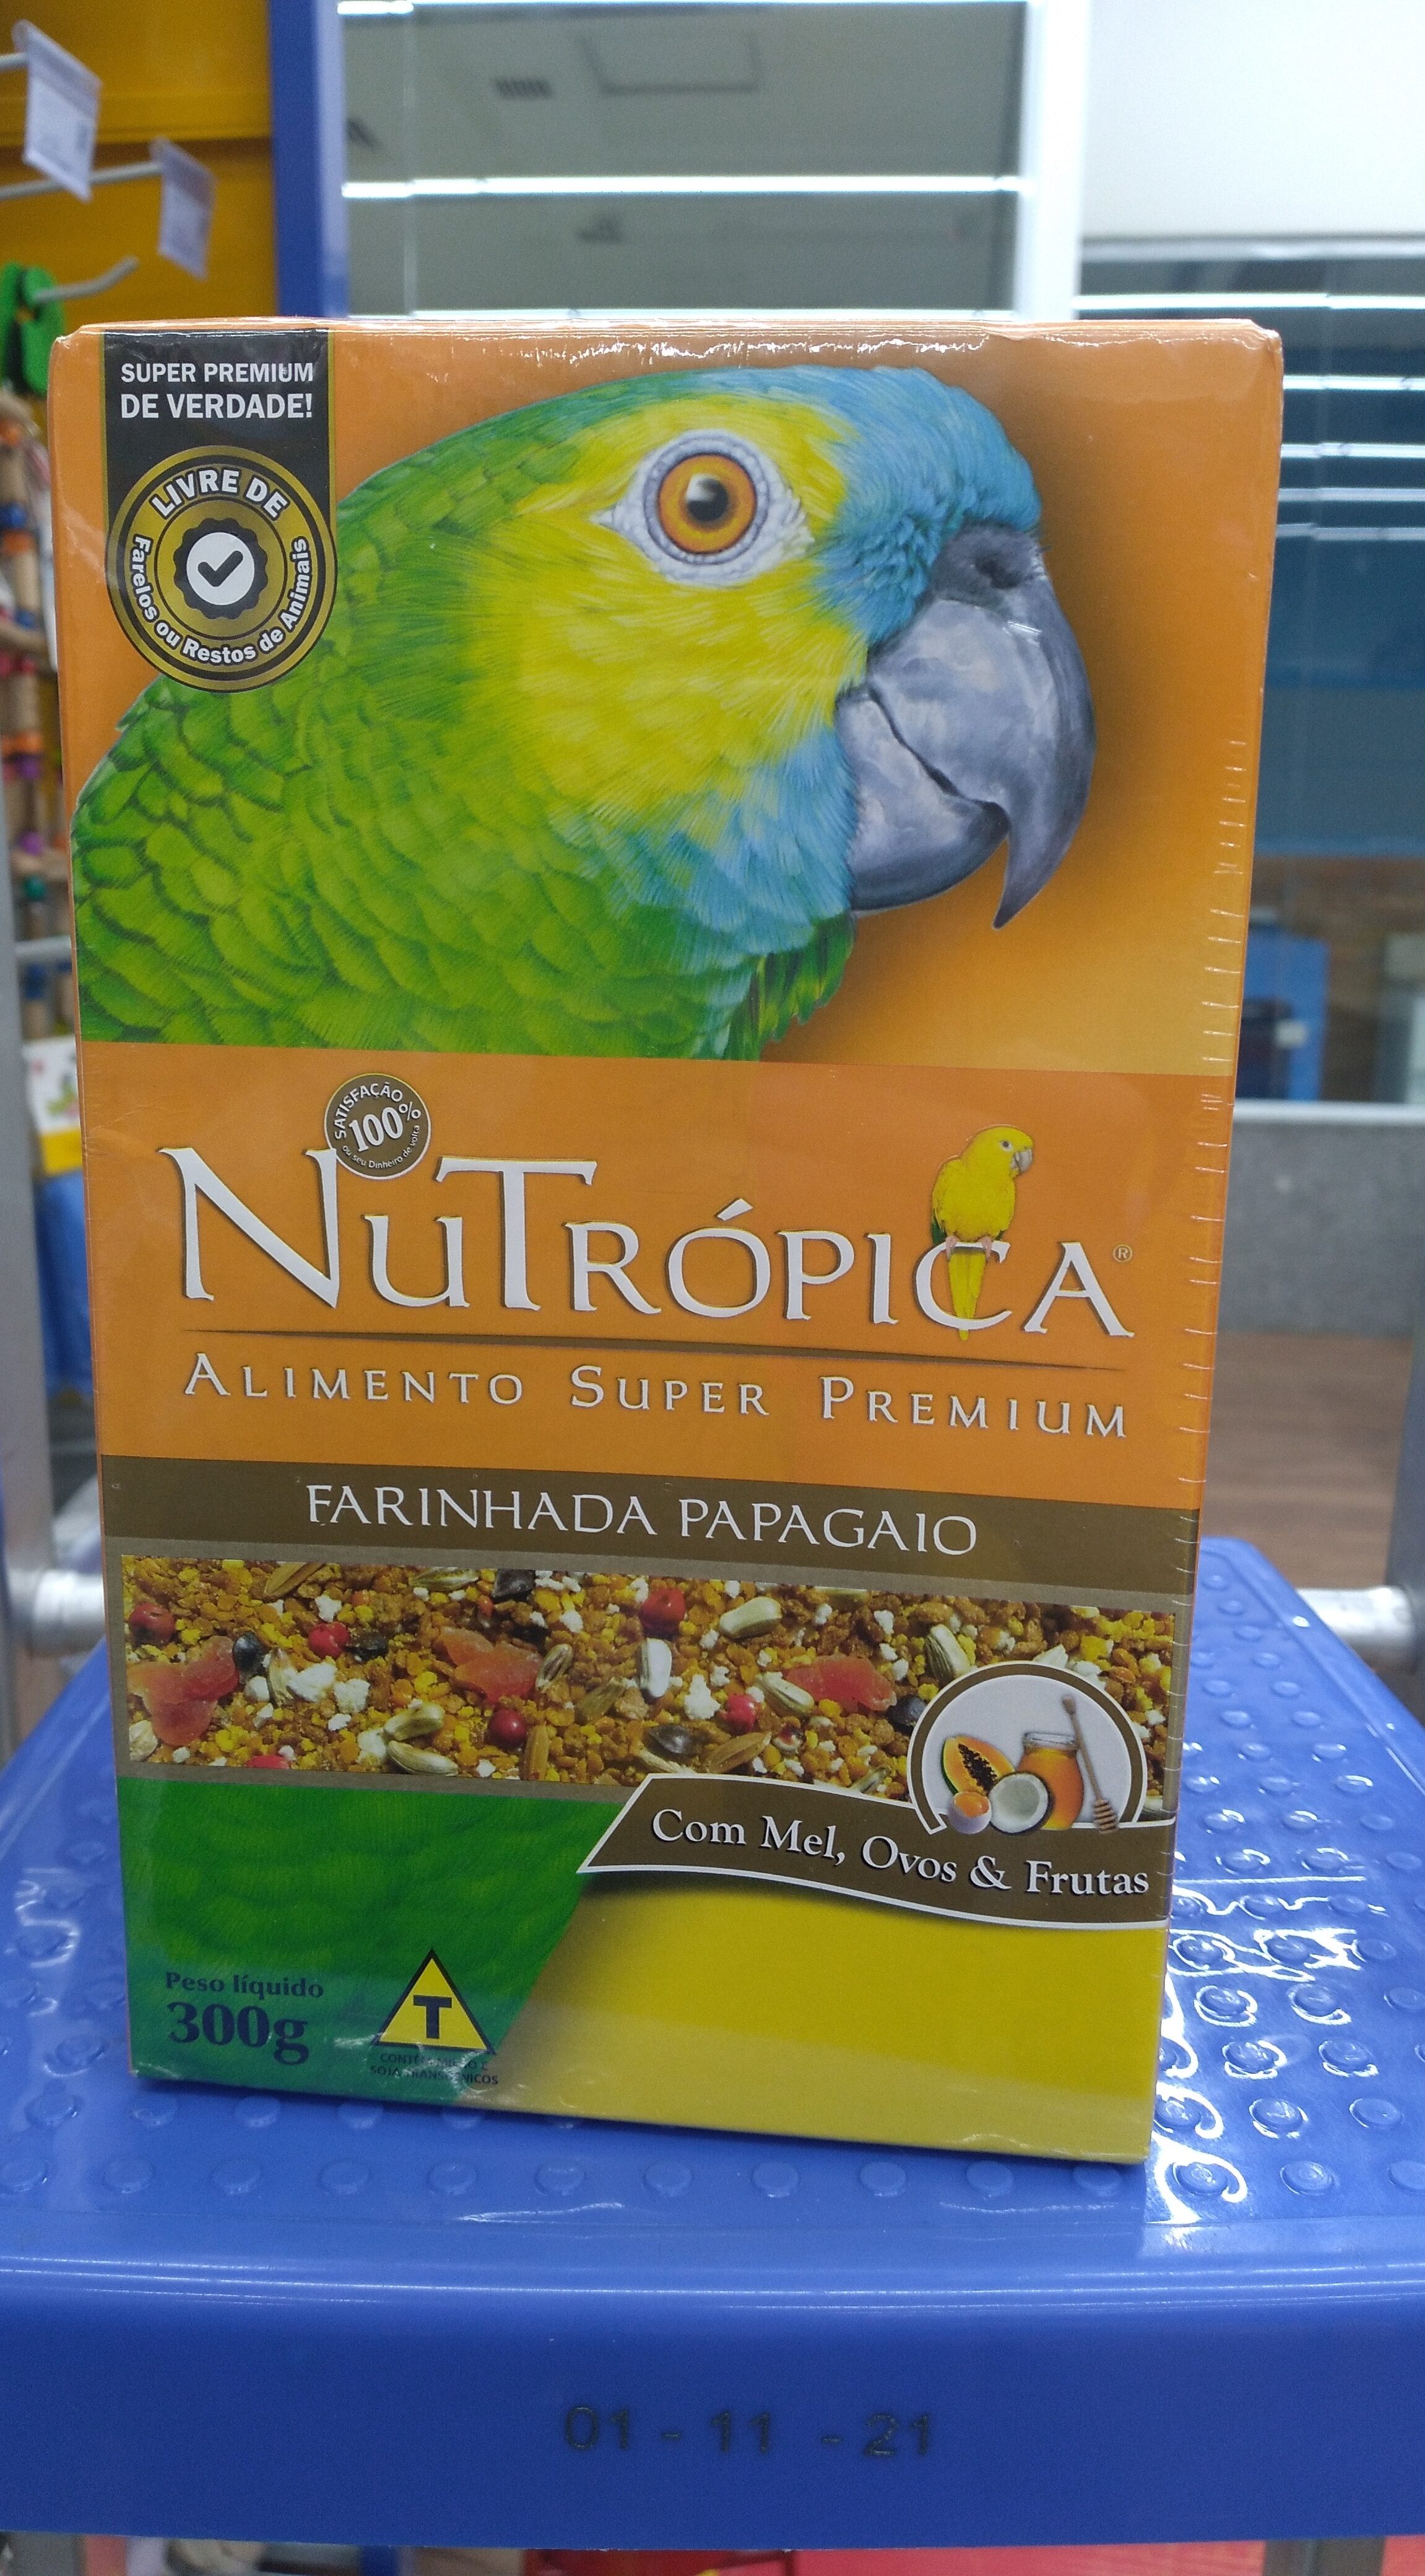 Nutrópica Farinhada Papagaio 300g - Product - pt